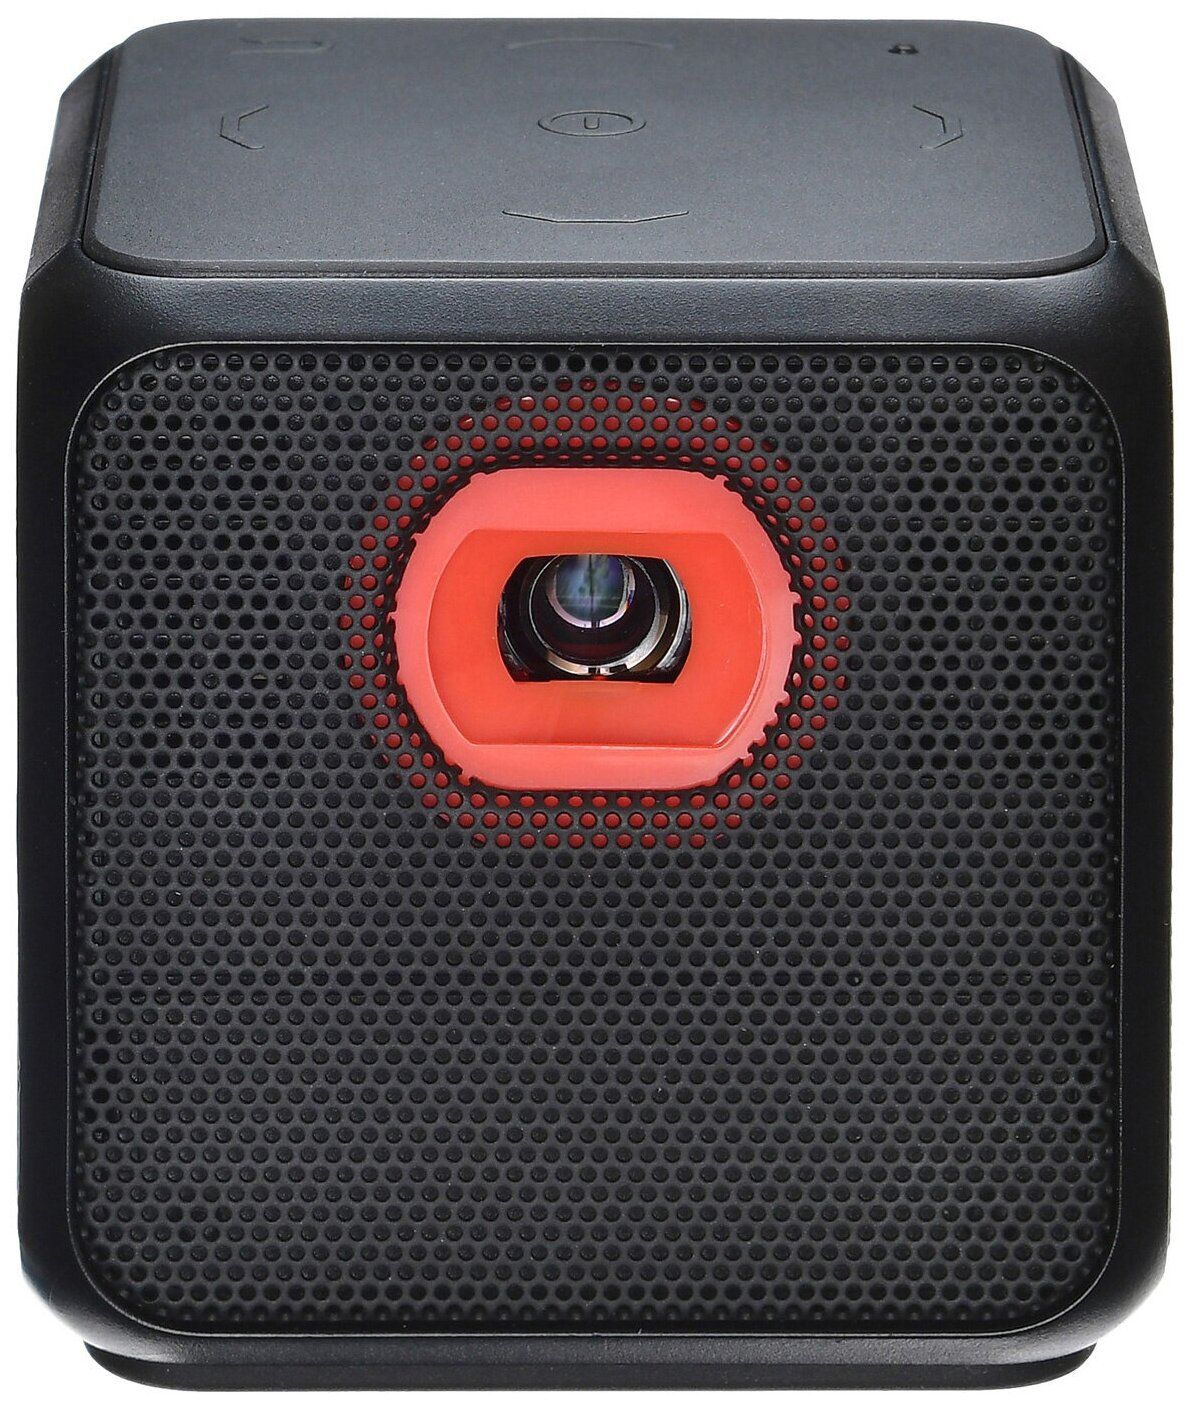 Мини-кинотеатр Digma DiMagic Cube New black (DLP,854x480, 10000:1, USB-A, BT, WiFi) (DM011)